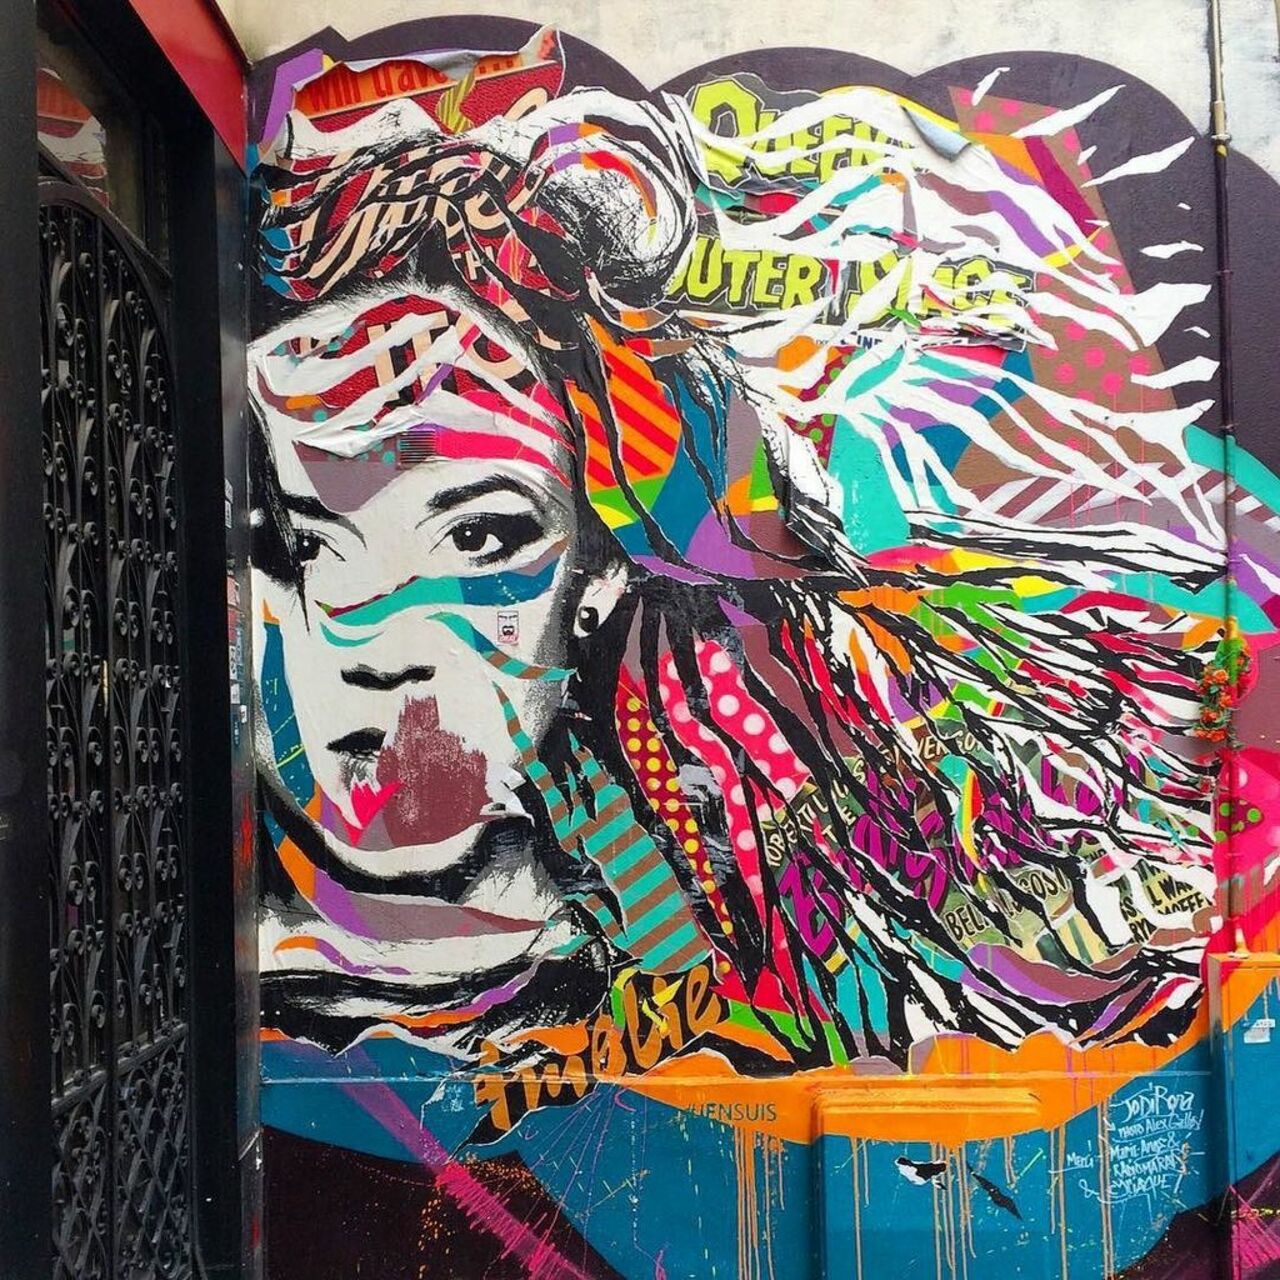 Wish you a colorful morning with @jodibona #jodibona #streetart #streetartparis #parisstreetart #graffiti #graffiti… https://t.co/i9U6ziaiww